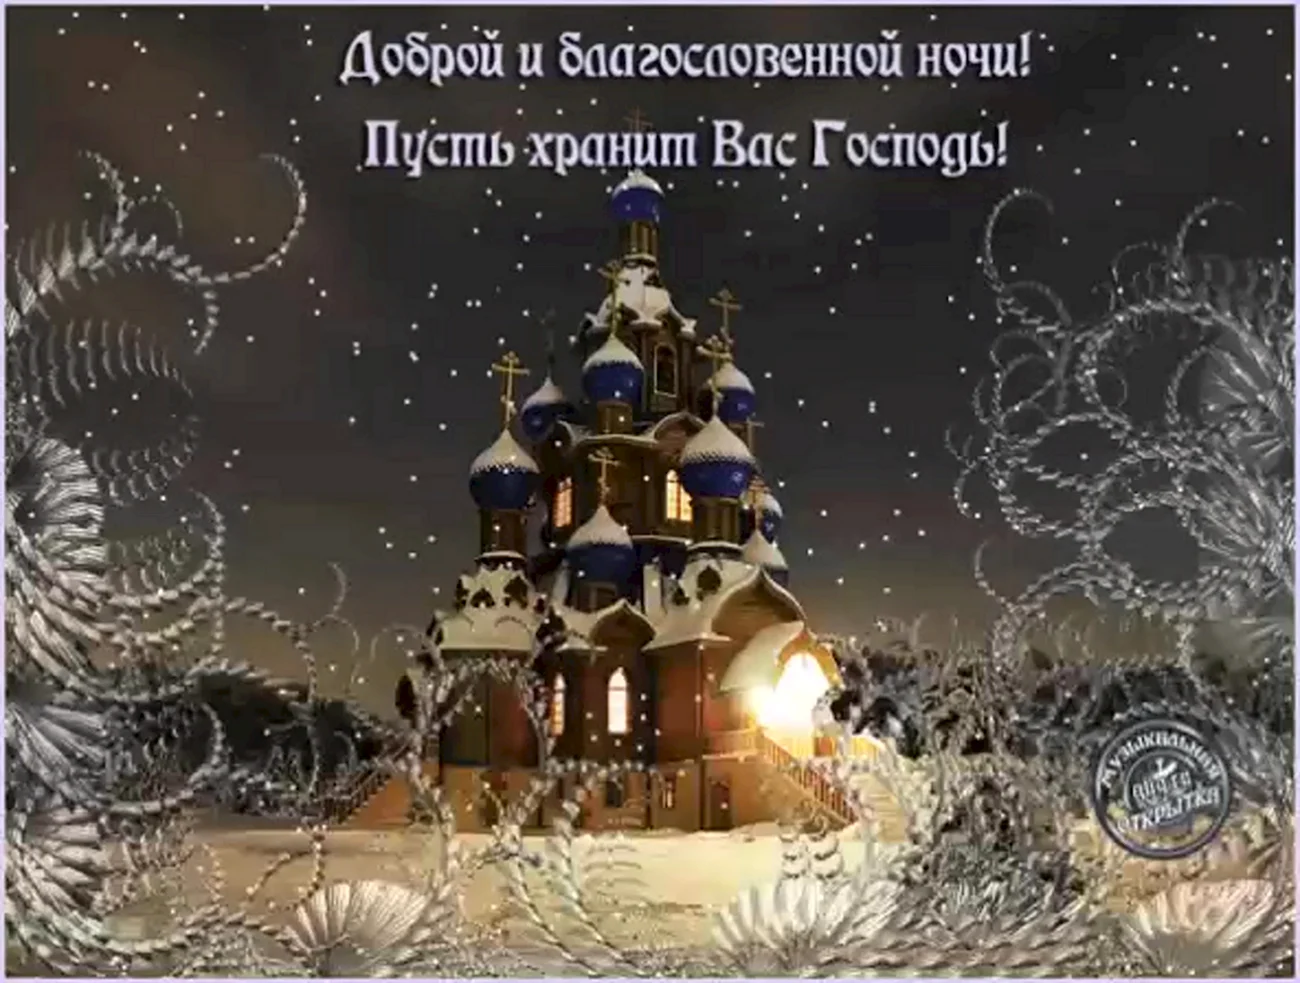 Православные пожелания спокойной ночи. Поздравление